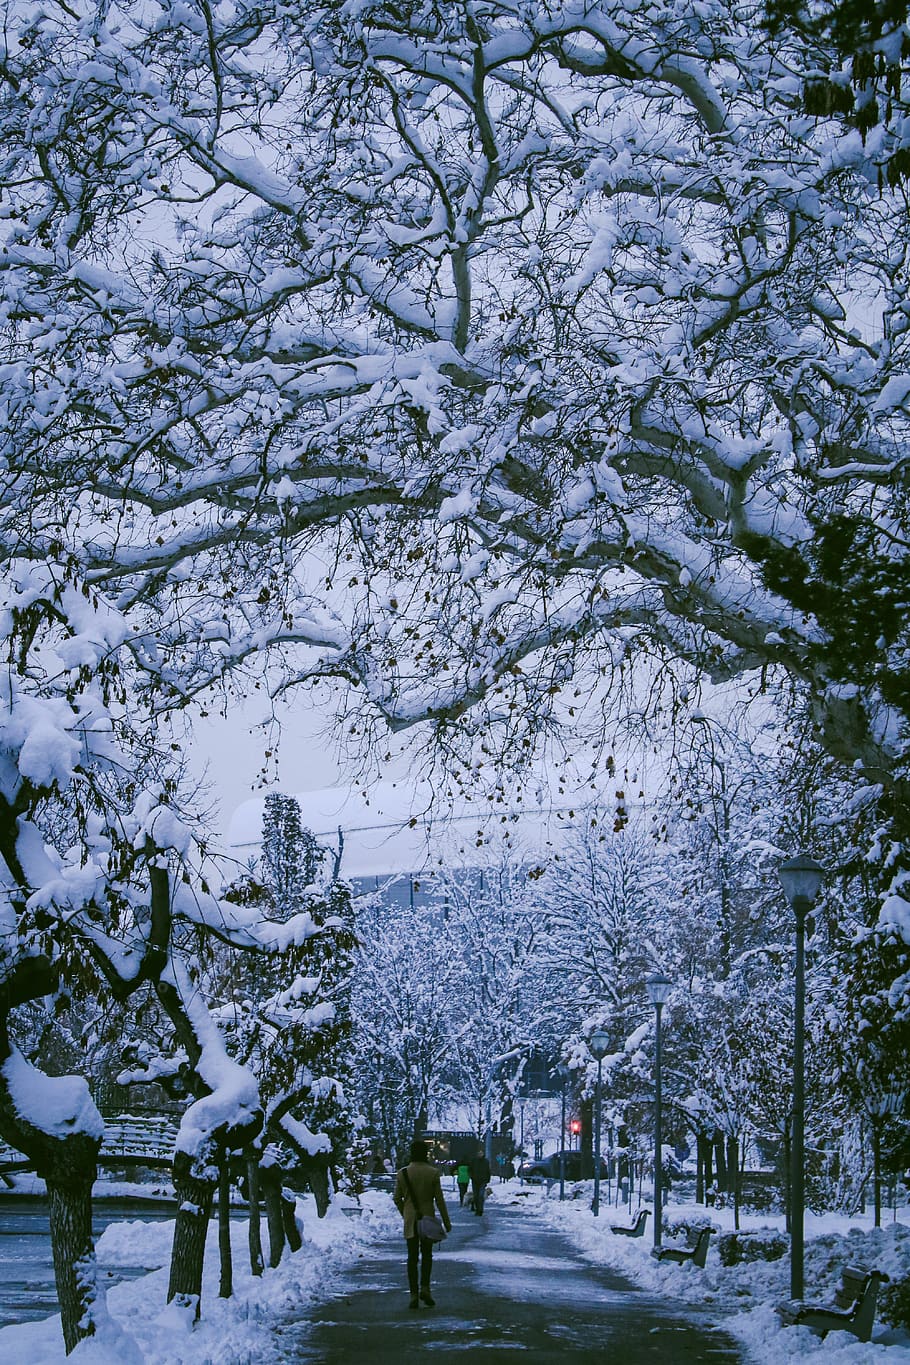 Tuyết rơi là một trong những phong cảnh trời đất thanh bình đẹp nhất. Hãy xem hình ảnh này để cảm nhận lượng tuyết trắng nhẹ nhàng rơi xuống khắp nơi, tạo nên một vẻ đẹp vô cùng lãng mạn và thơ mộng.